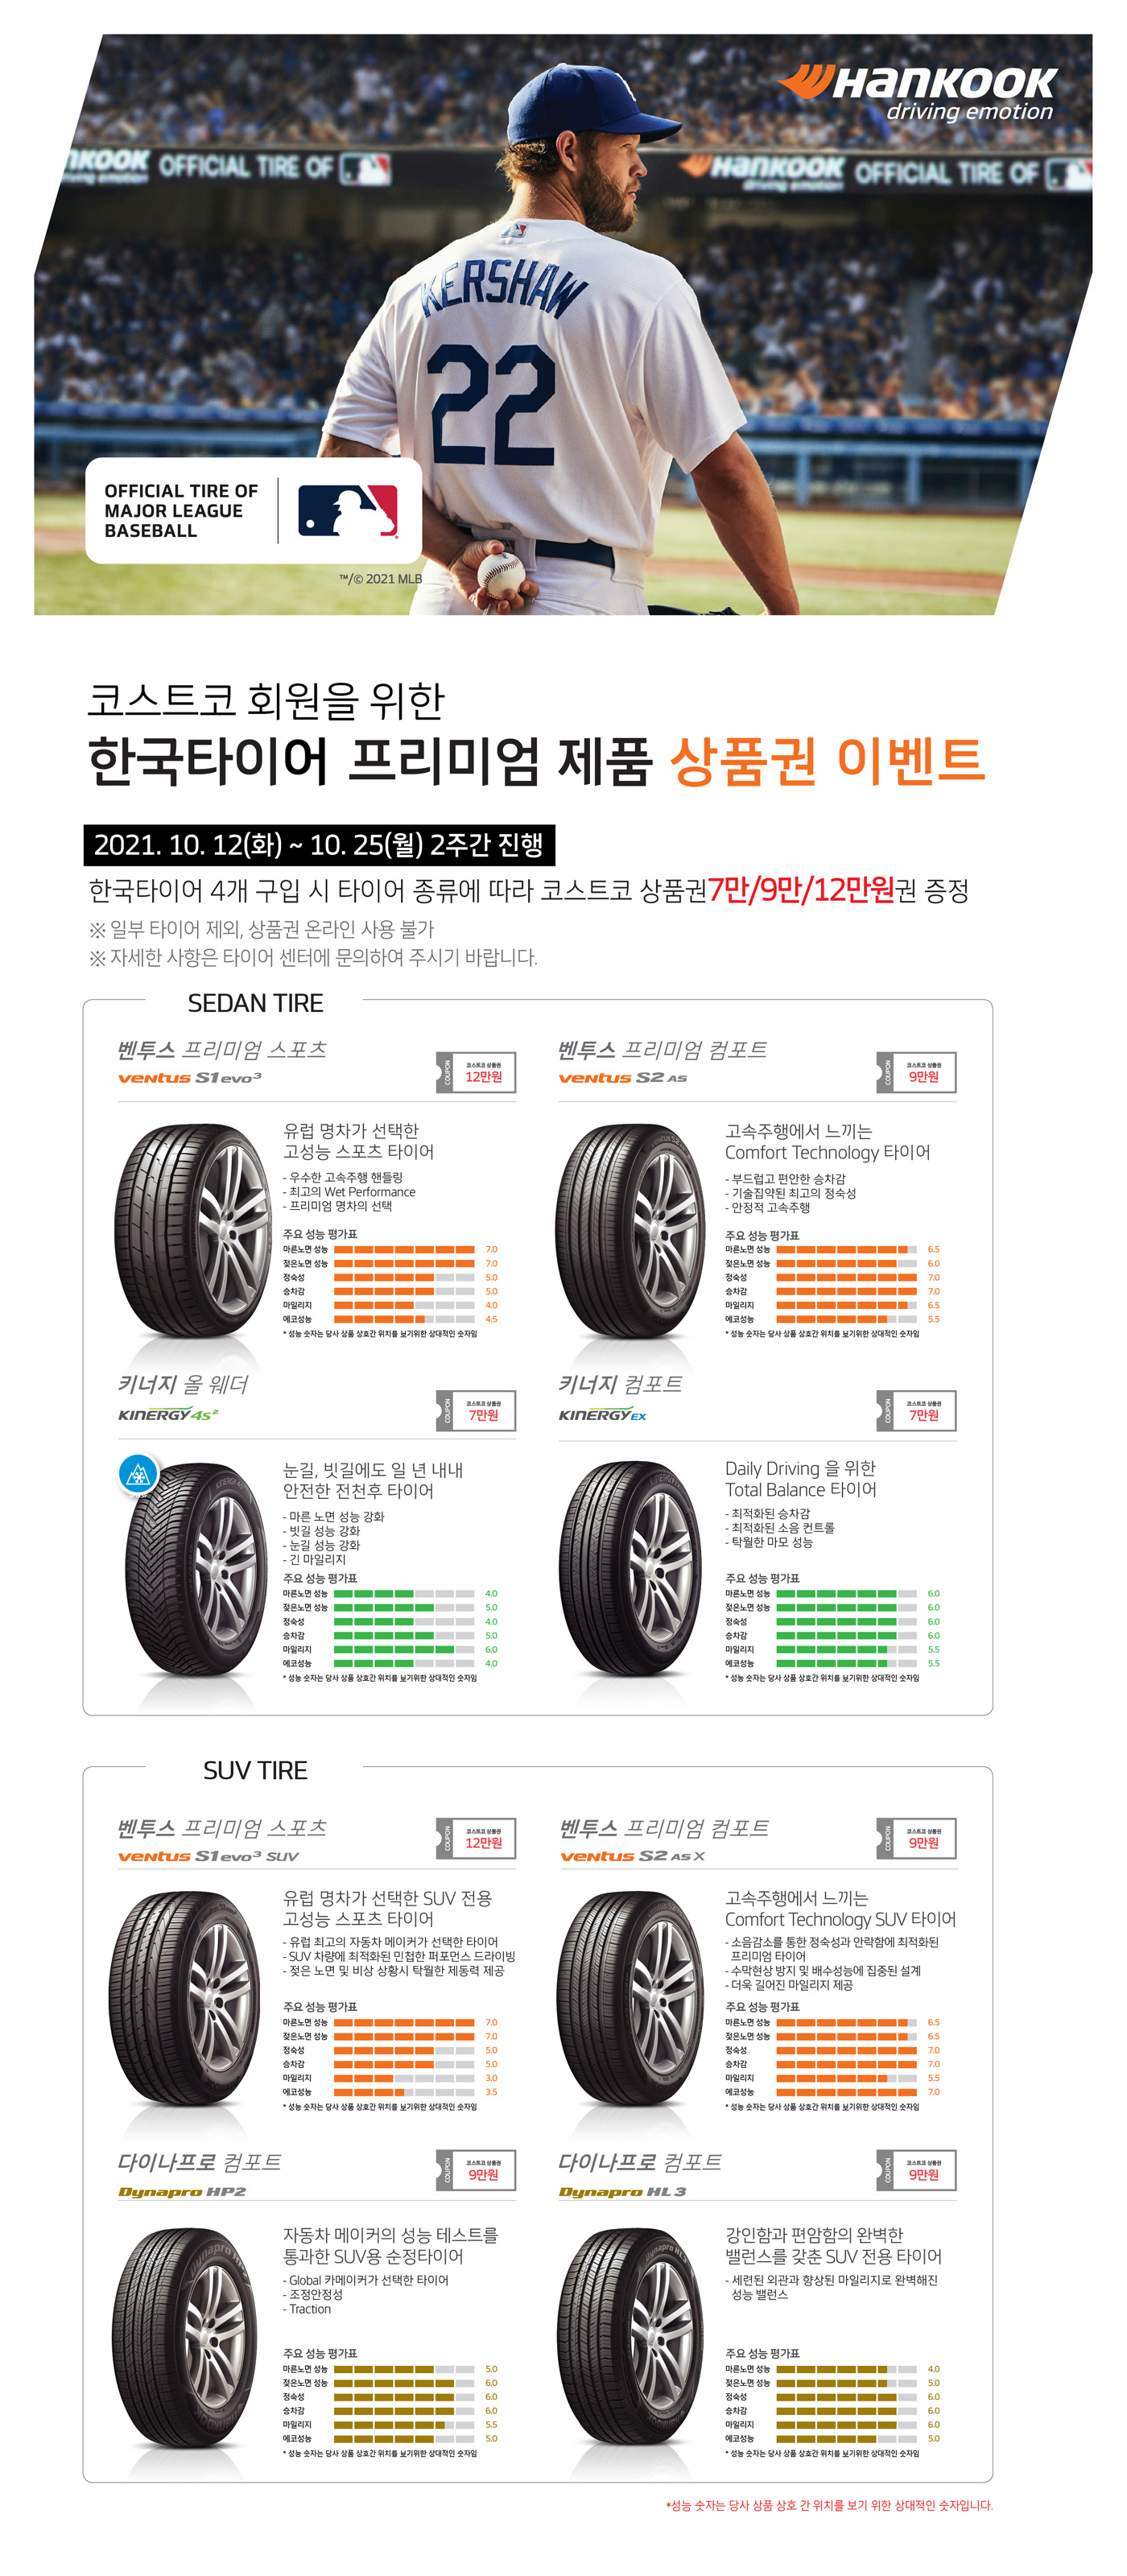 가격 2021 타이어 코스트코 코스트코 타이어